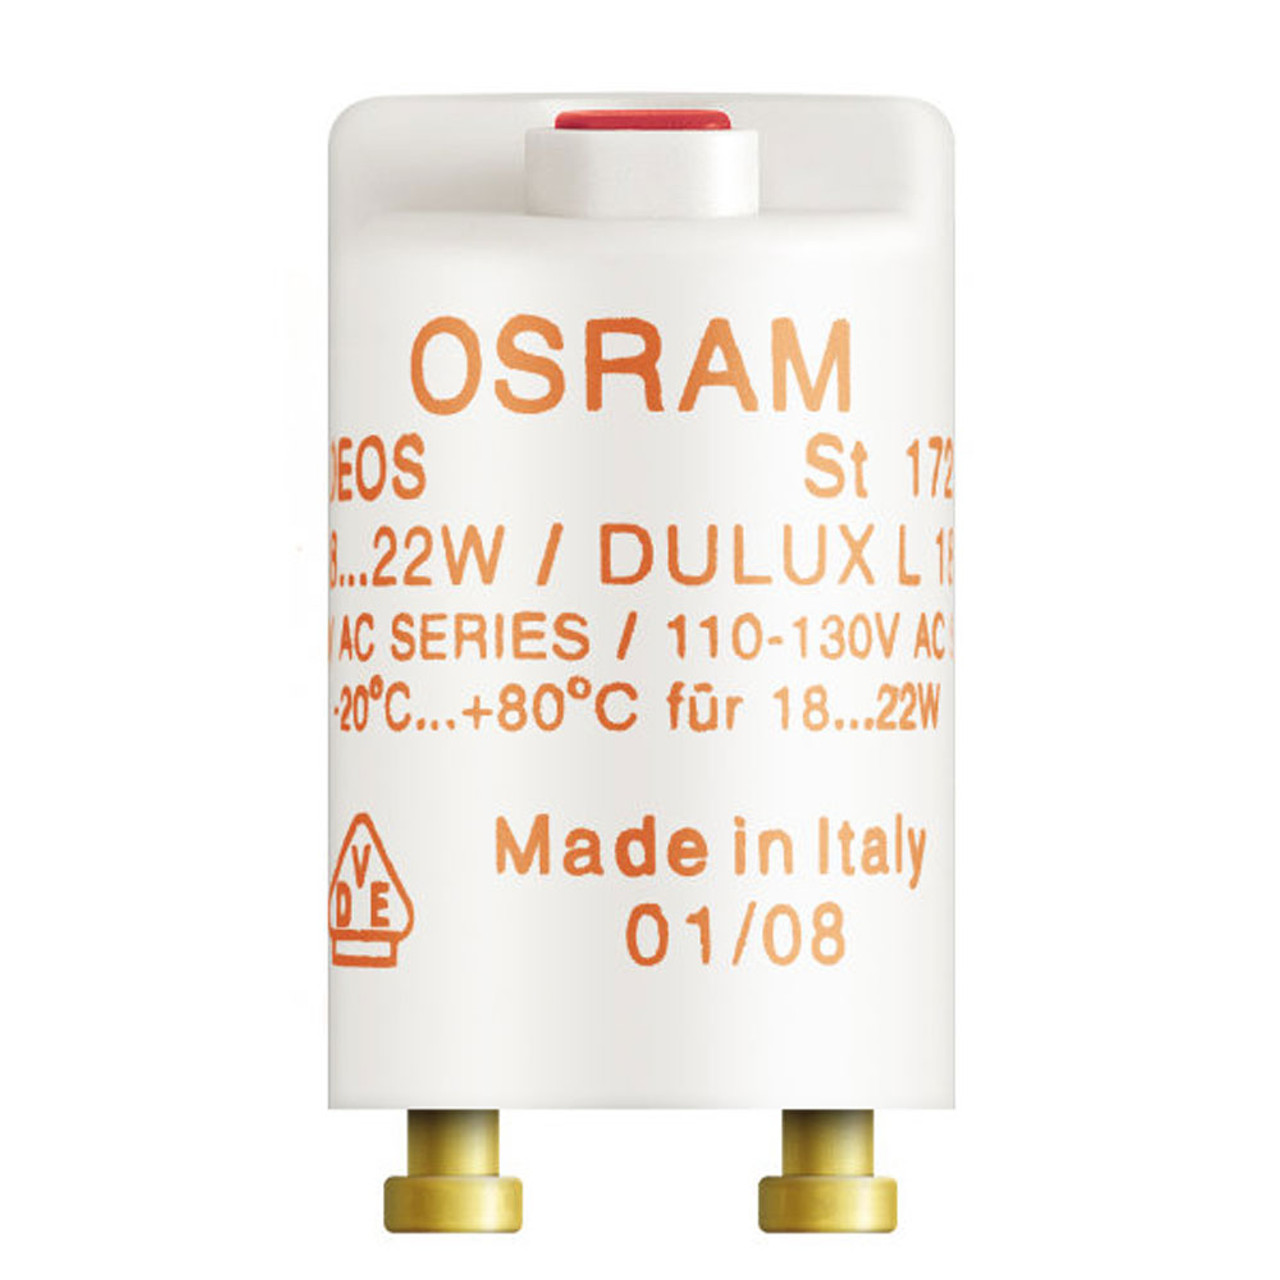 Osram Safety starter ST172 18-22W SERIES